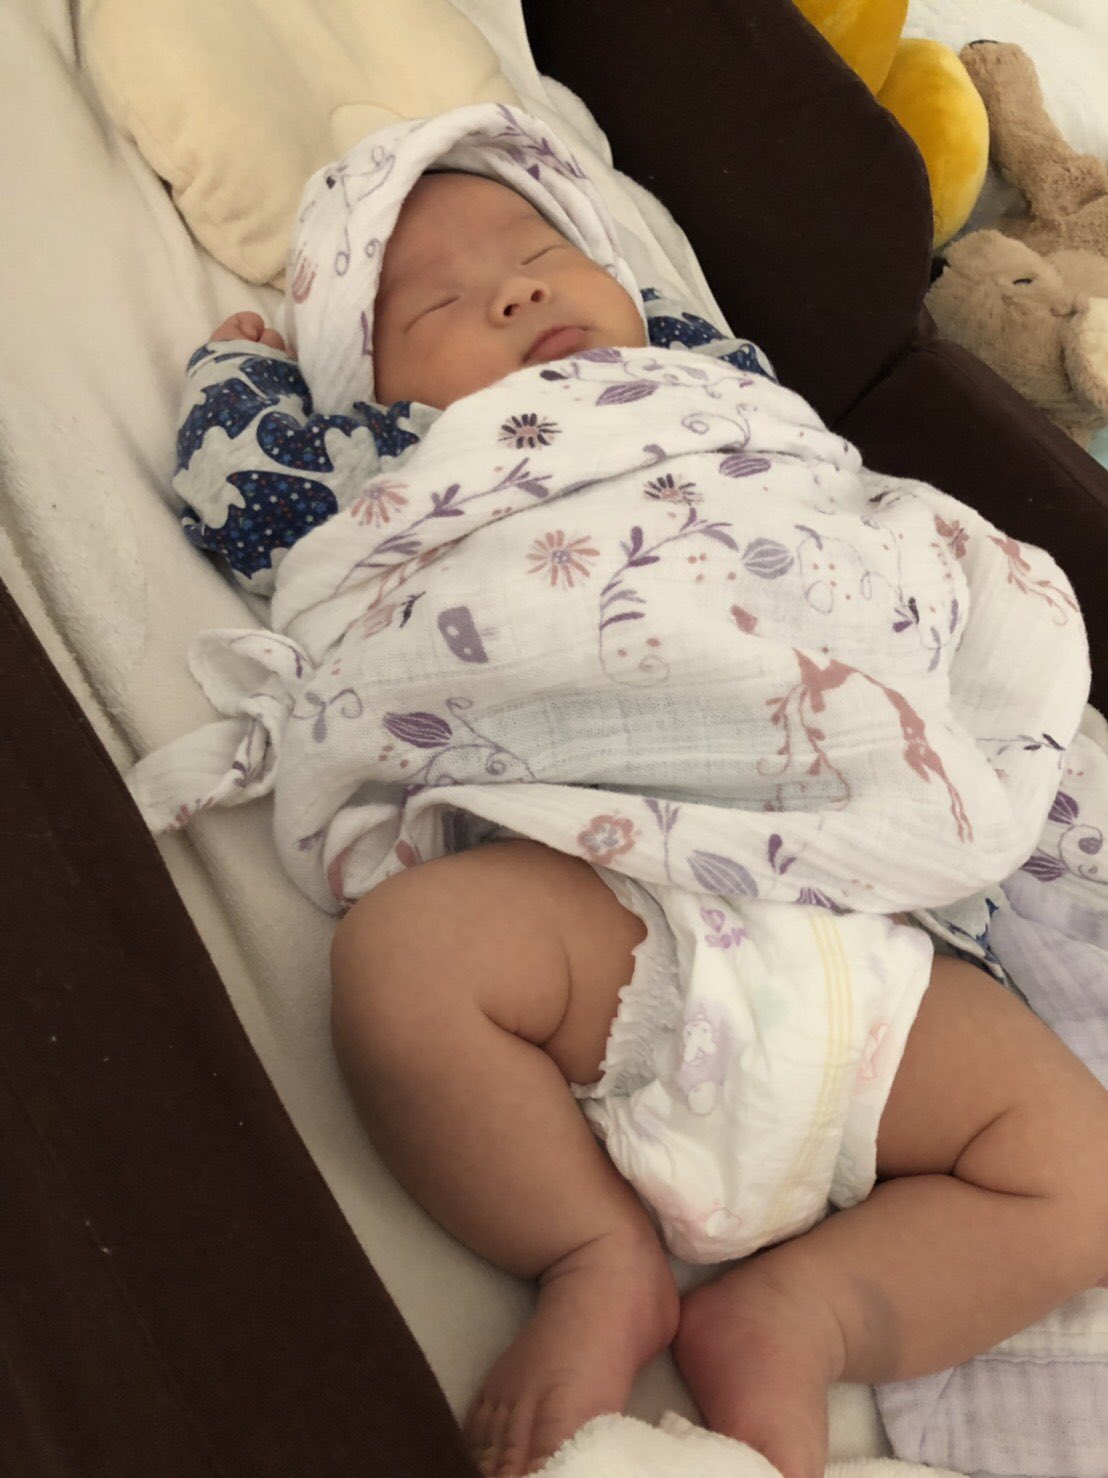 ゆーま 杉並区からフットサルプロチームを 経営者フットサラー 1ヶ月健診きたら5キロになってた 重いと思ったらこれだよ 1 8キロ増 おタオさん スクスク成長中です 赤ちゃん 1ヶ月健診 Baby 自分は生まれたとき4 300グラムでした T Co